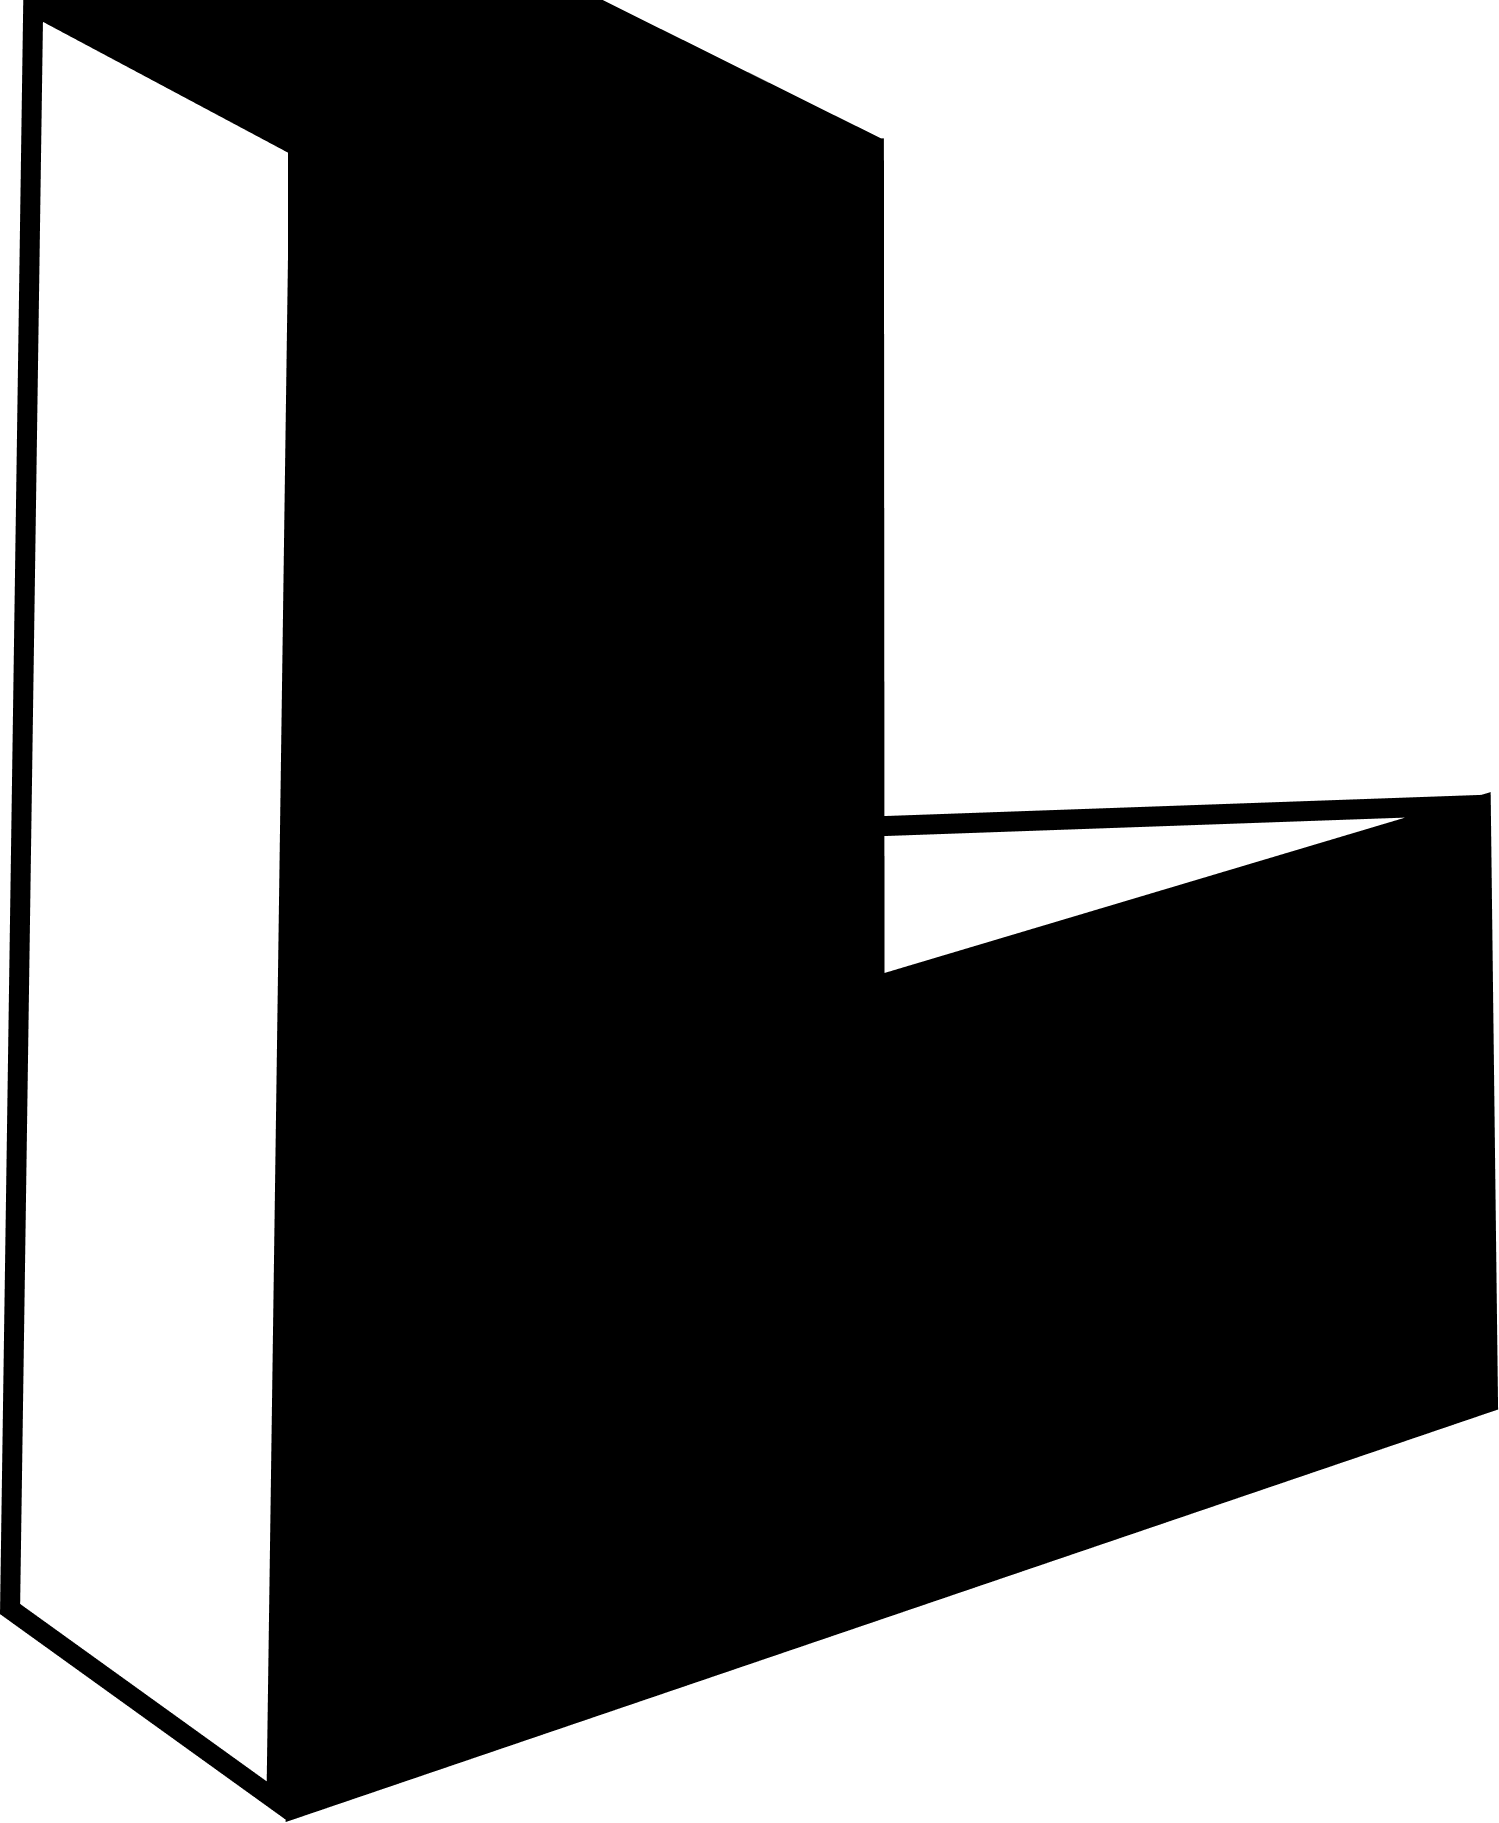 A stylized L serving as a logo